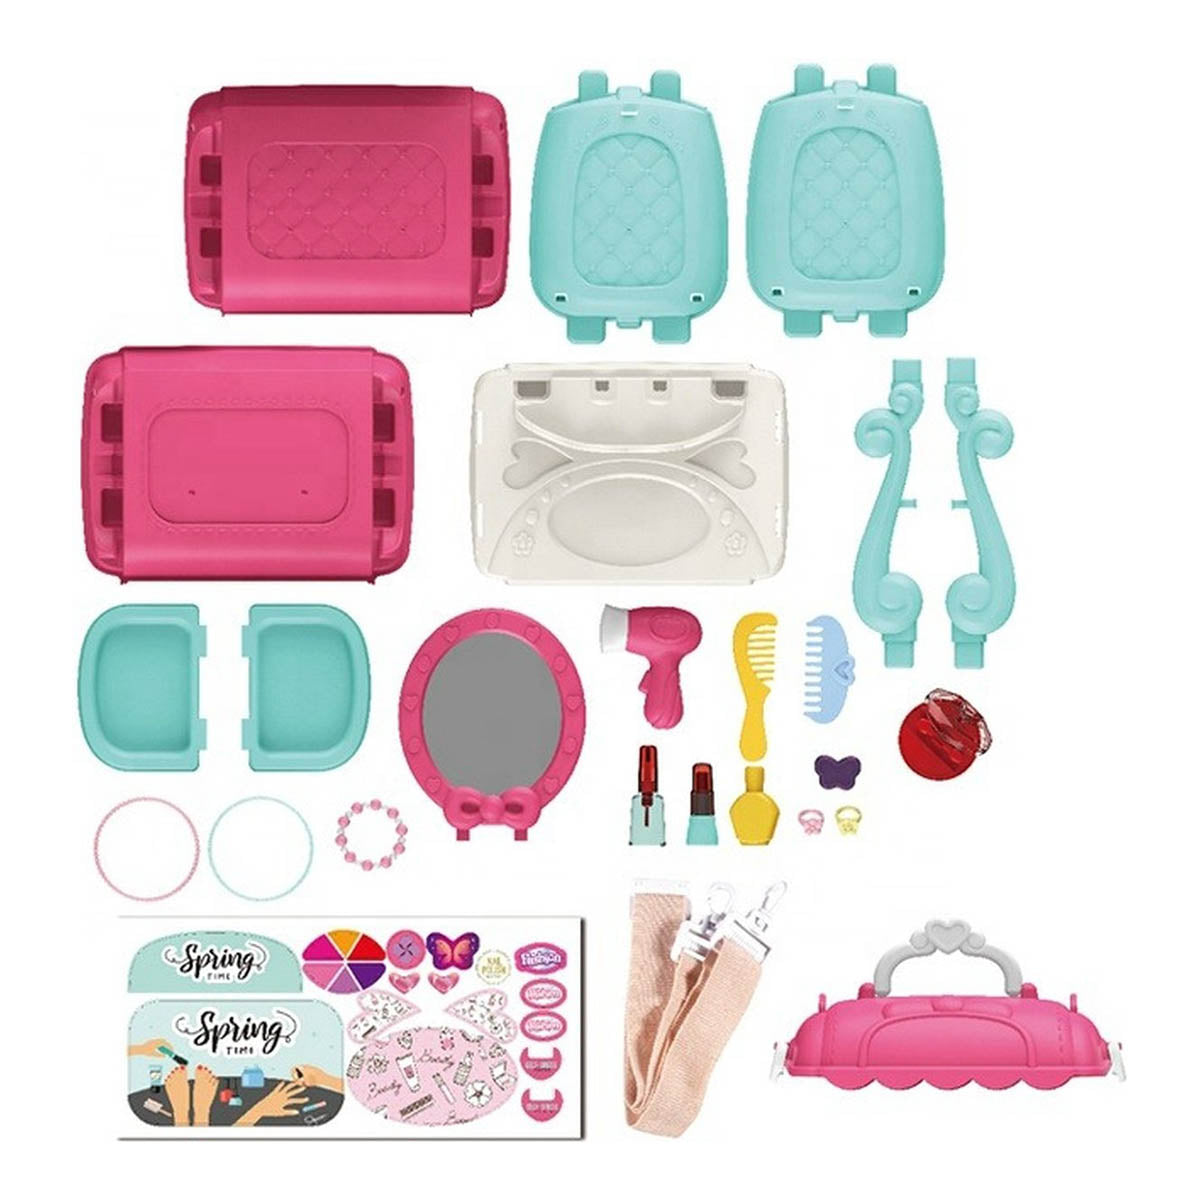 Ariko Spielzeugkoffer Kosmetiksalon 31 Teile - Föhn, Spiegel, Schminke, Parfüm und vieles mehr - praktischer Koffer zum Mitnehmen